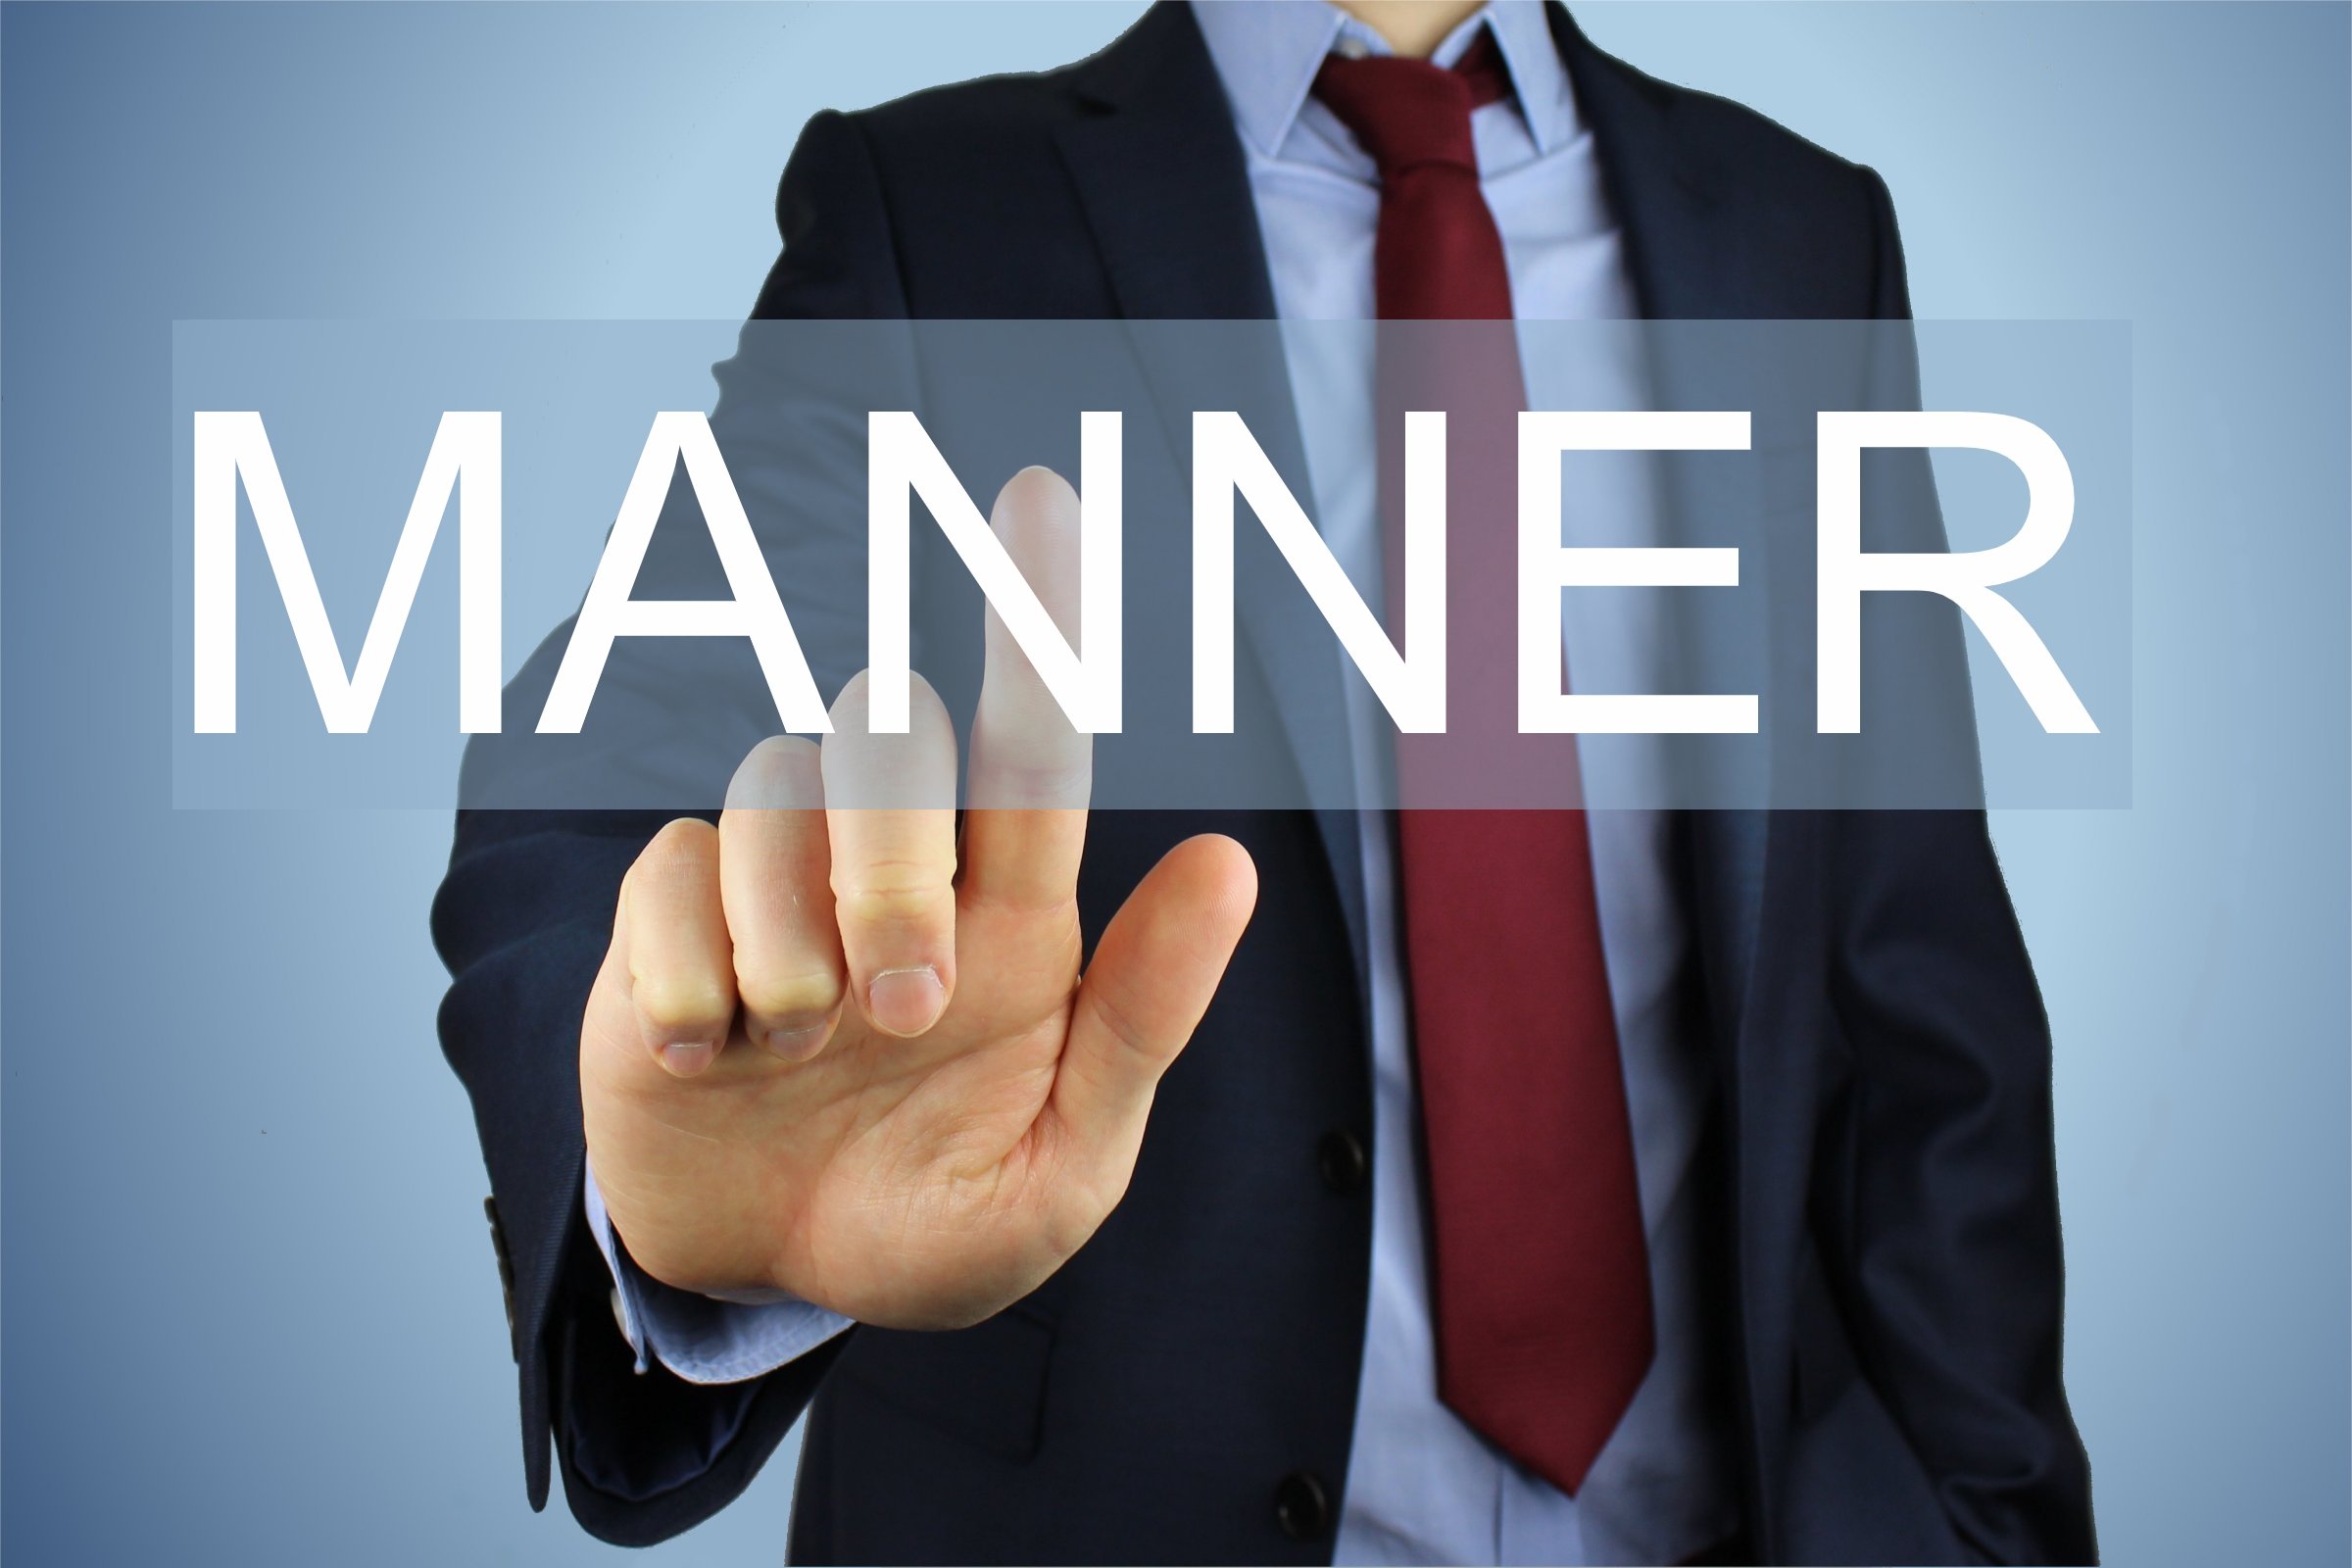 manner